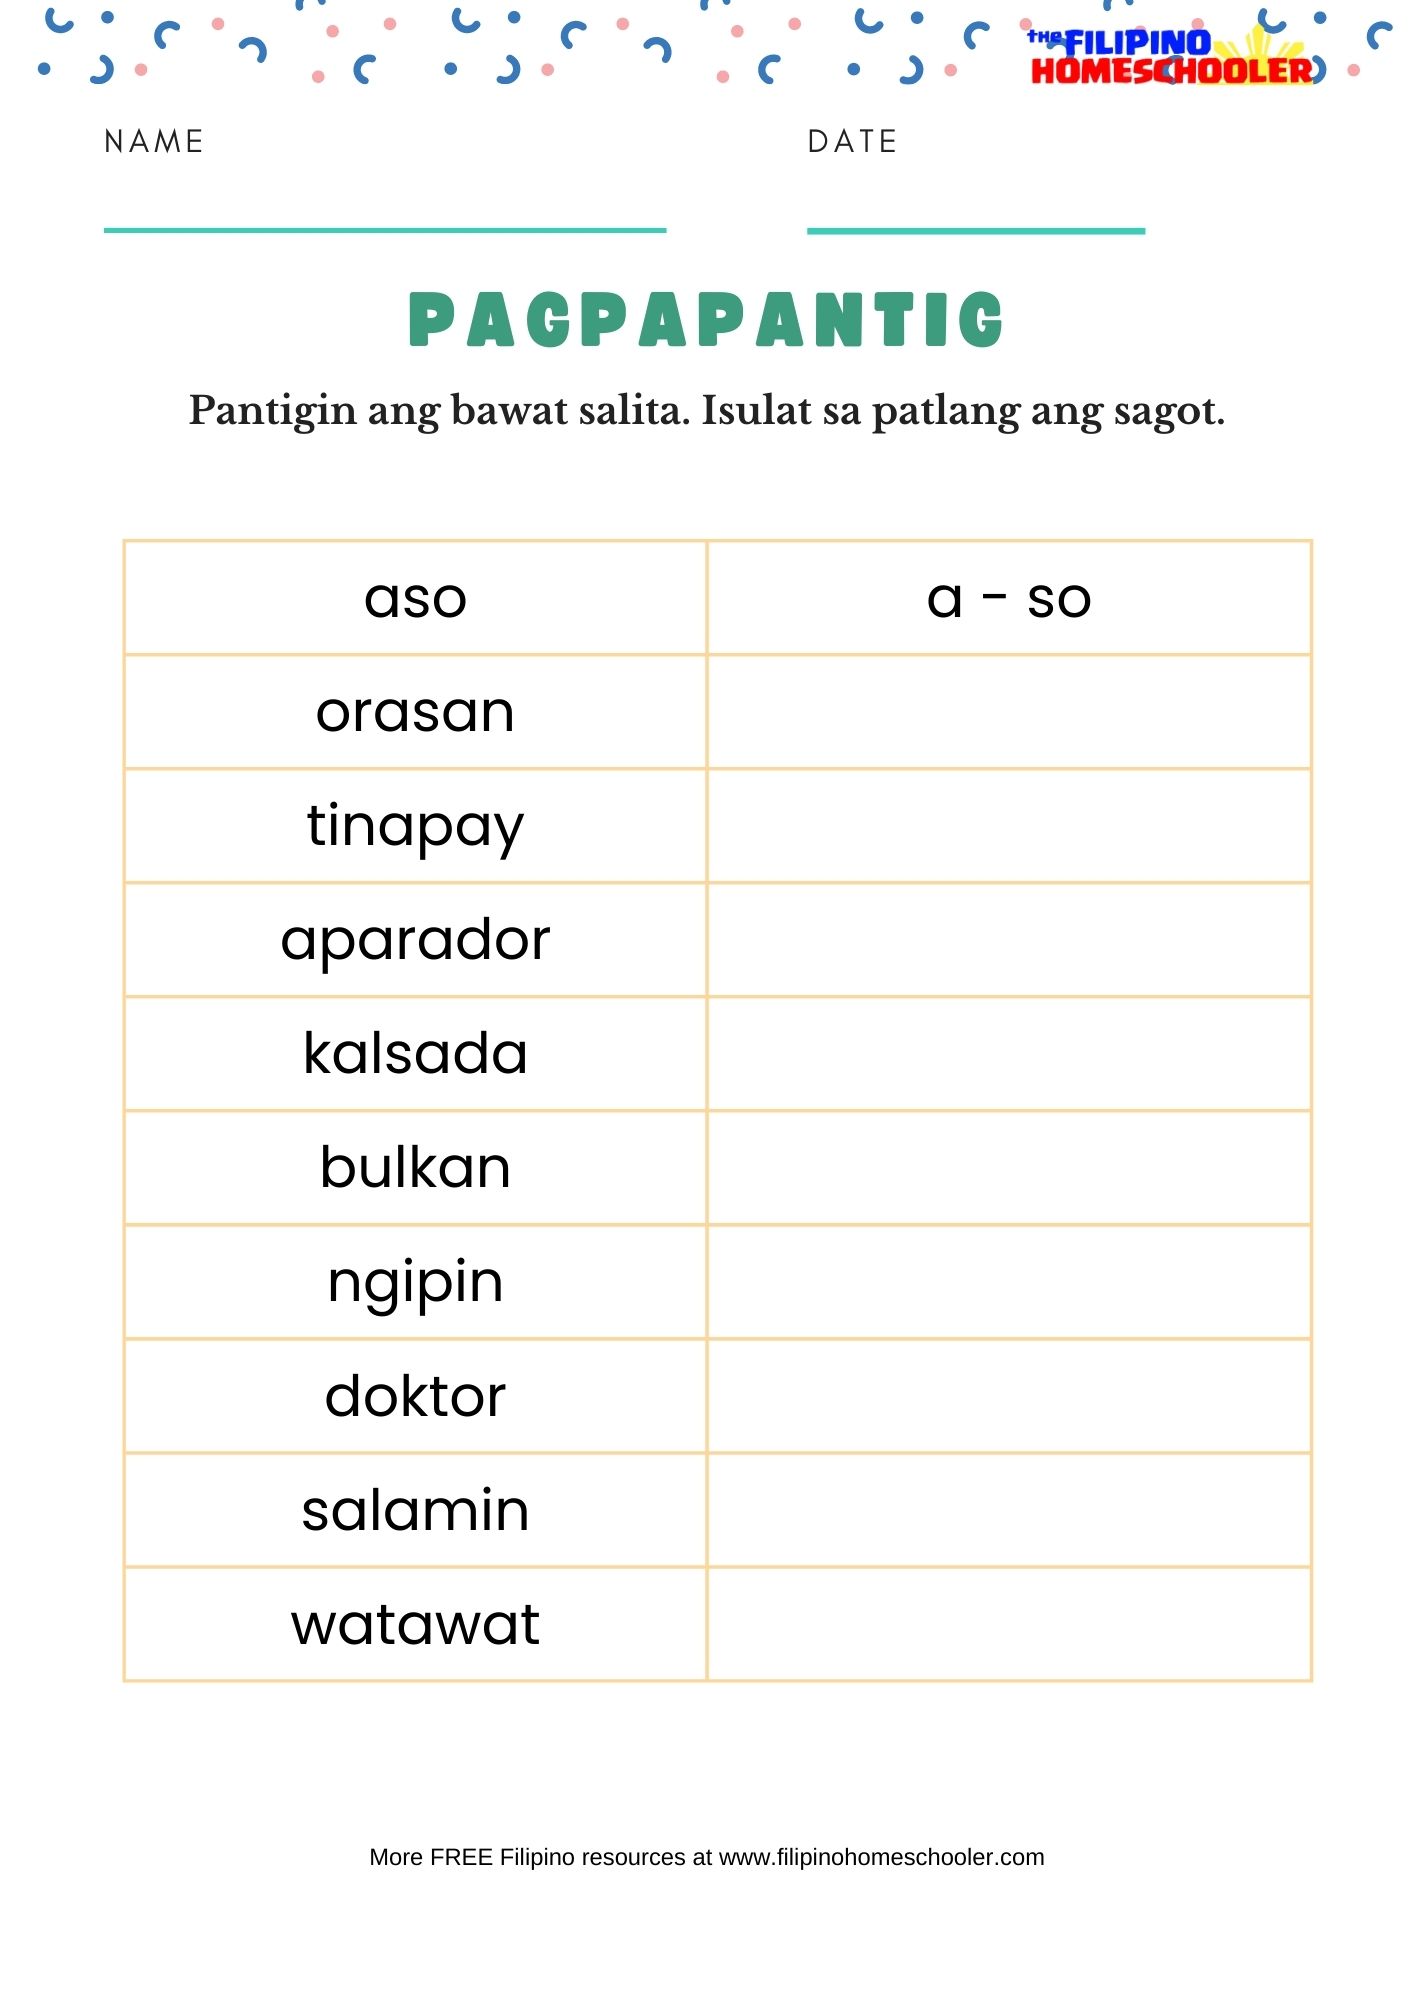 pagpapantig-free-filipino-worksheets-set-2-the-filipino-homeschooler